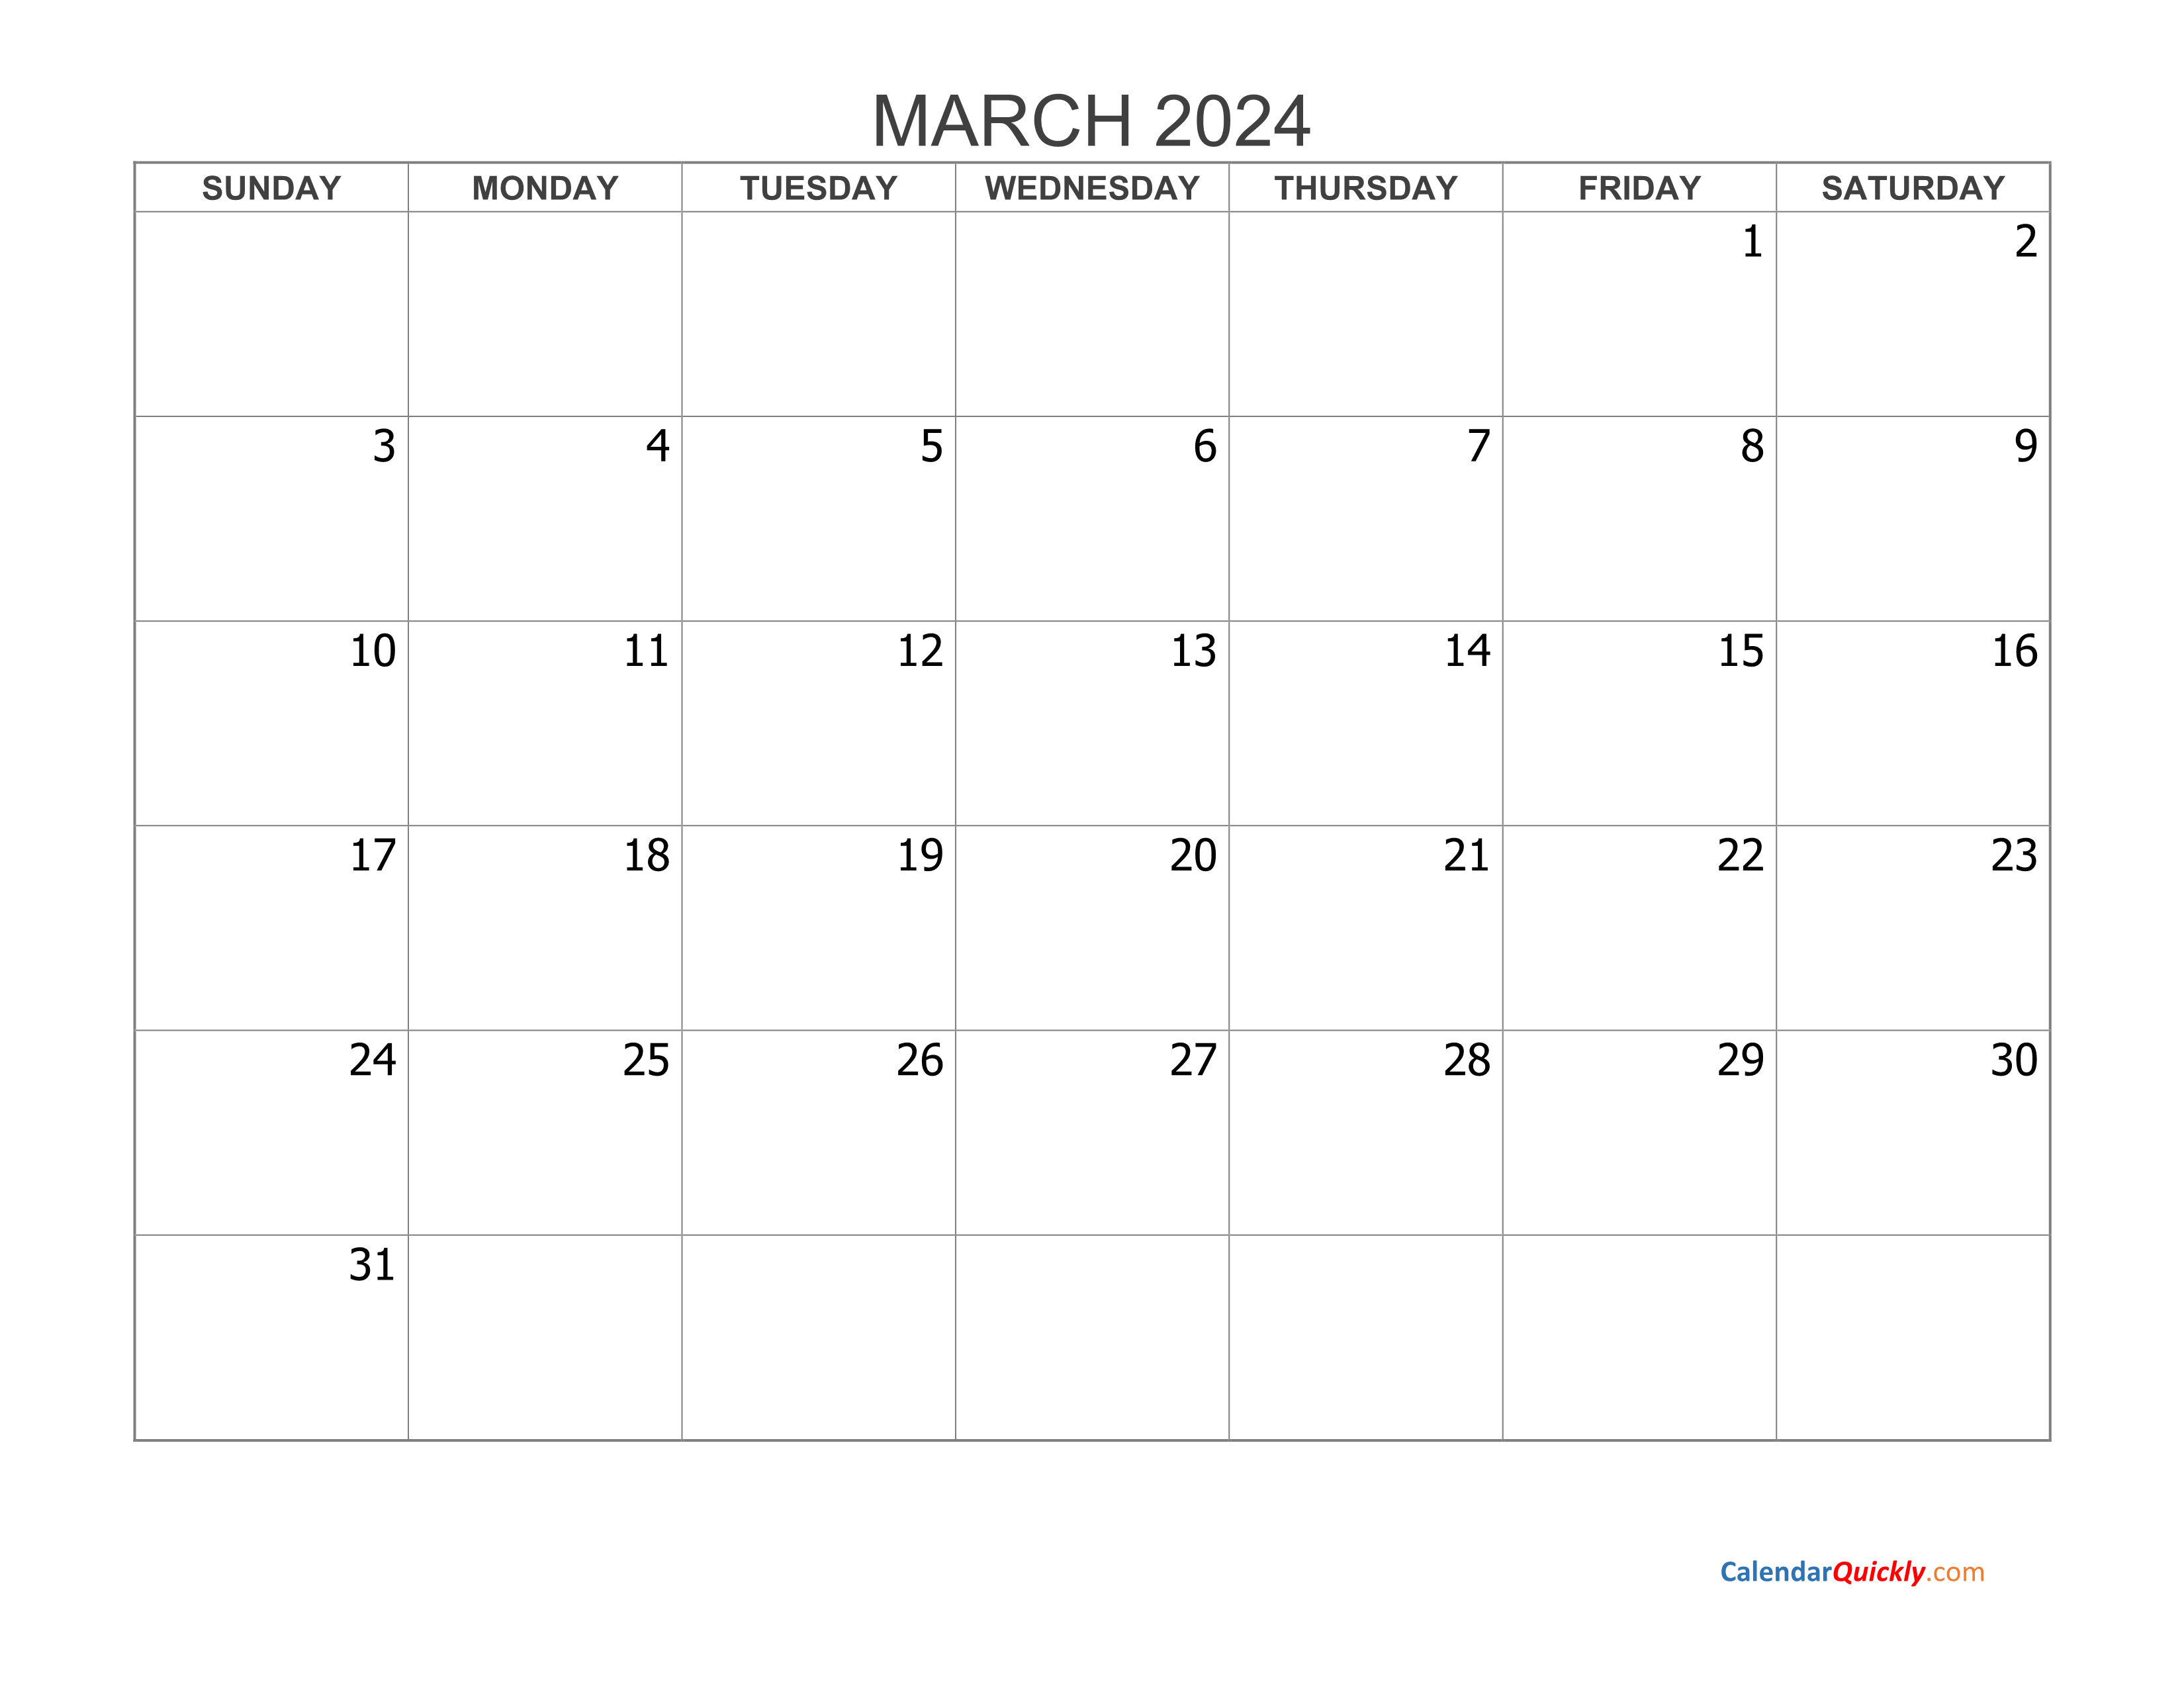 March 2024 Blank Calendar Calendar Quickly - Free Printable Blank Calendar Design 2024